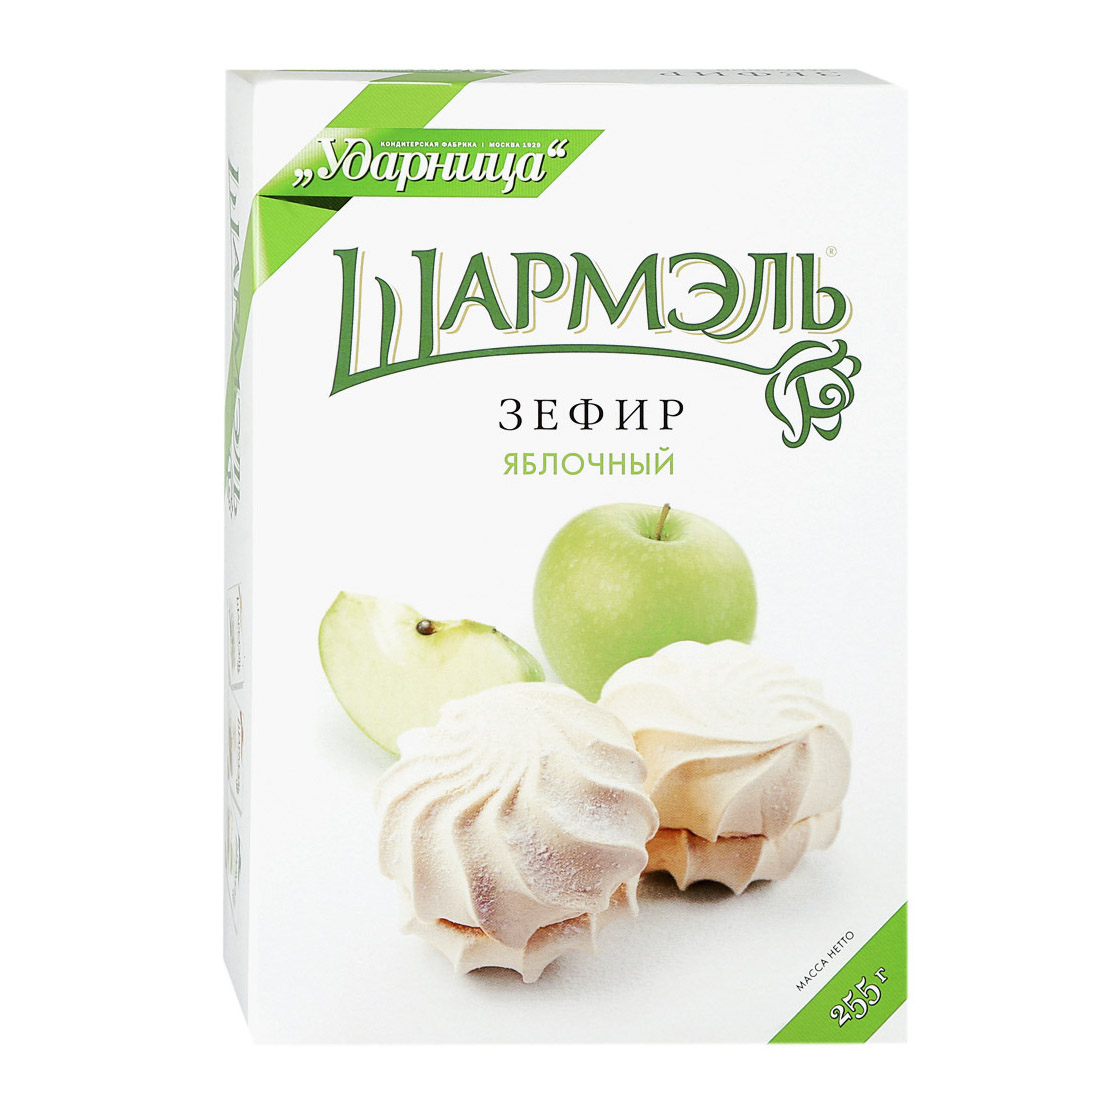 Зефир Шармэль яблочный 255 г зефир шармэль с ароматом ванили 255 г